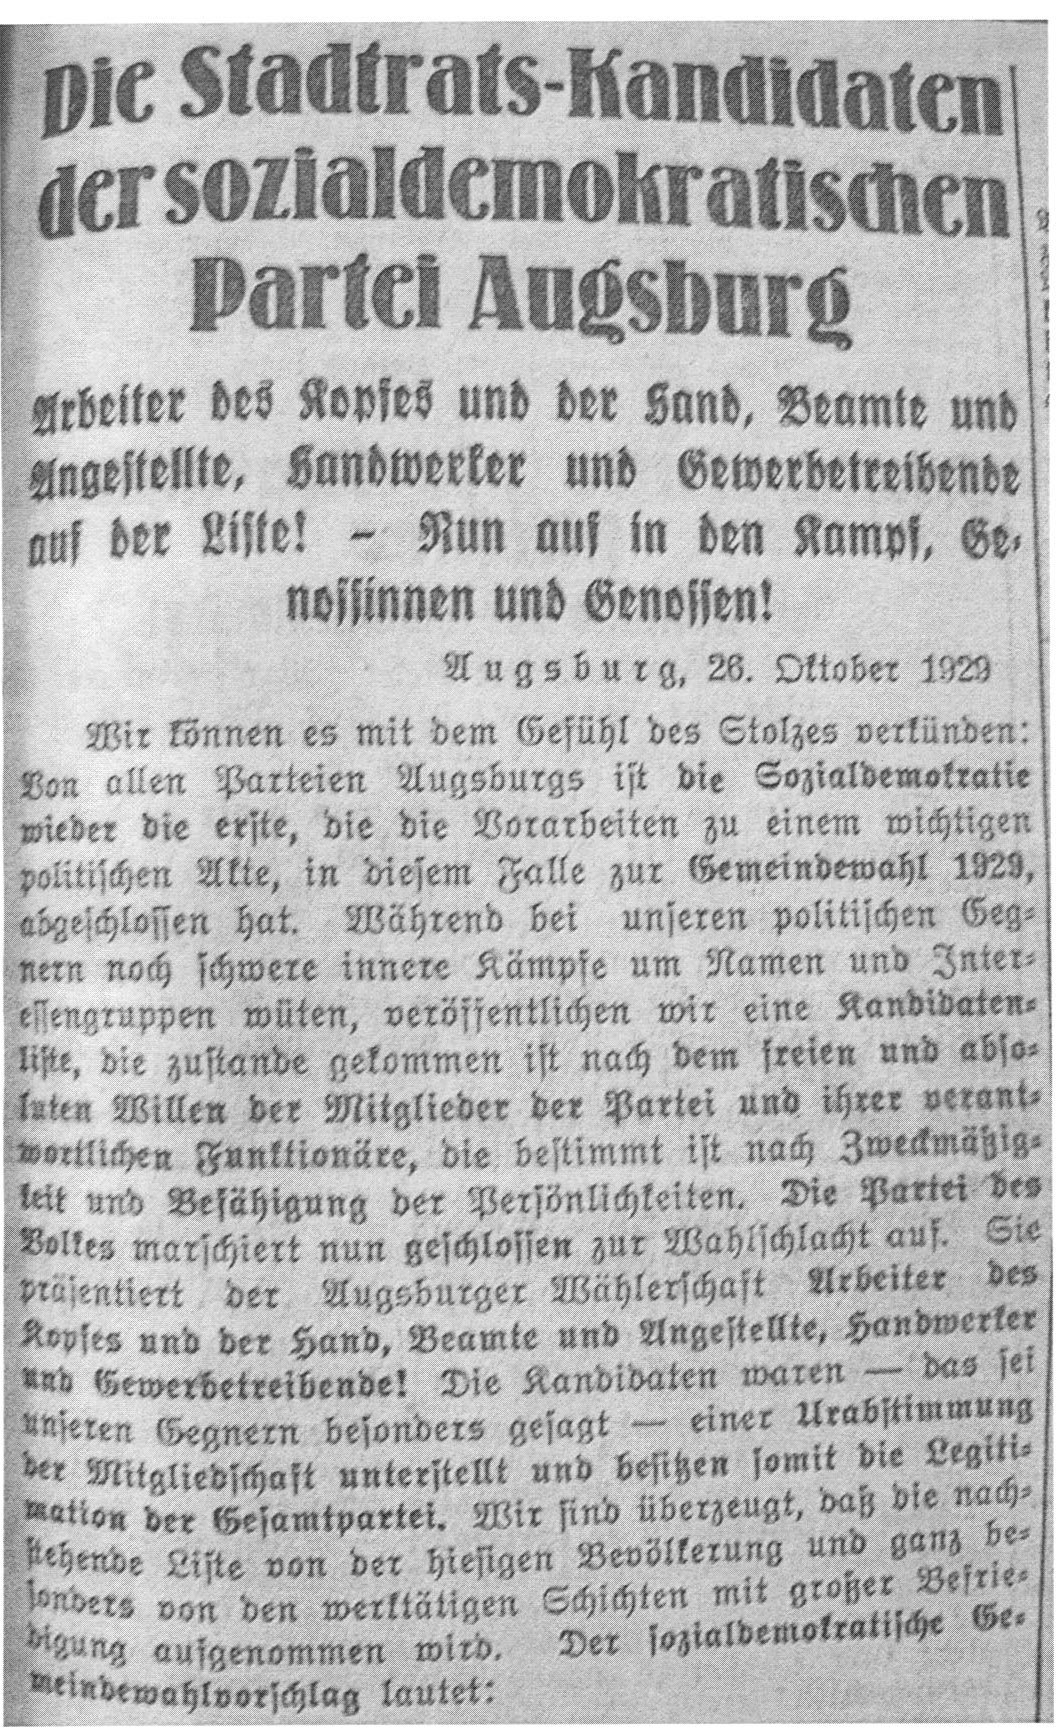 Die Stadtrats-Kandidaten der SPD in Augsburg am 28.10.1929